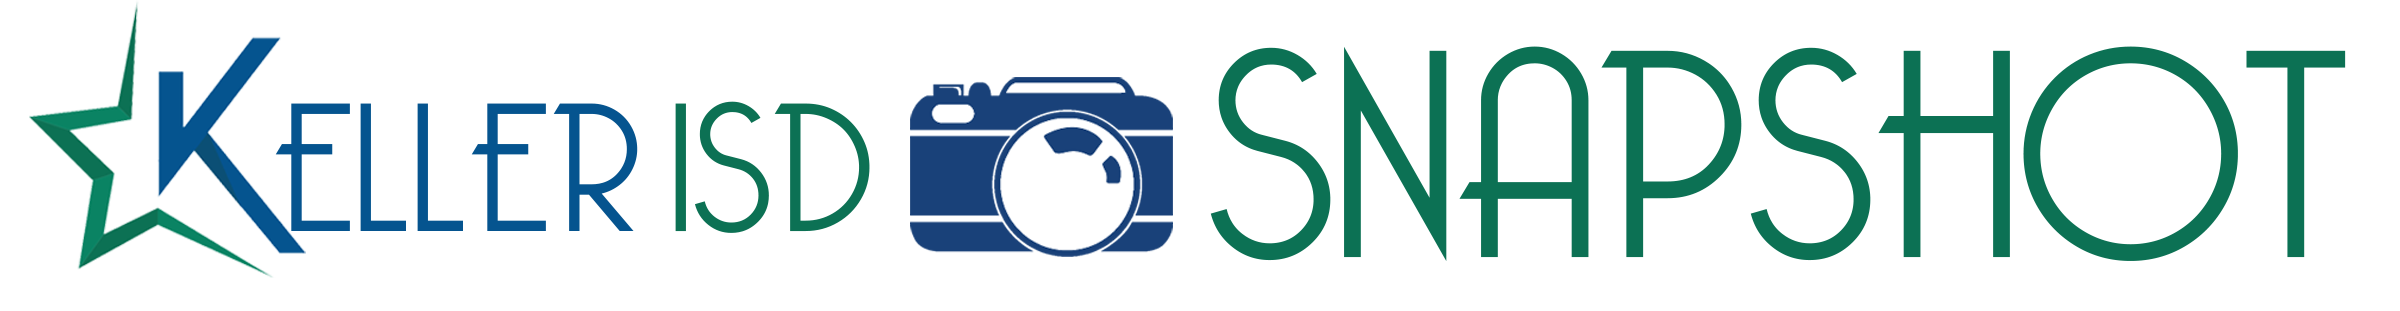 Keller ISD Snapshot logo 